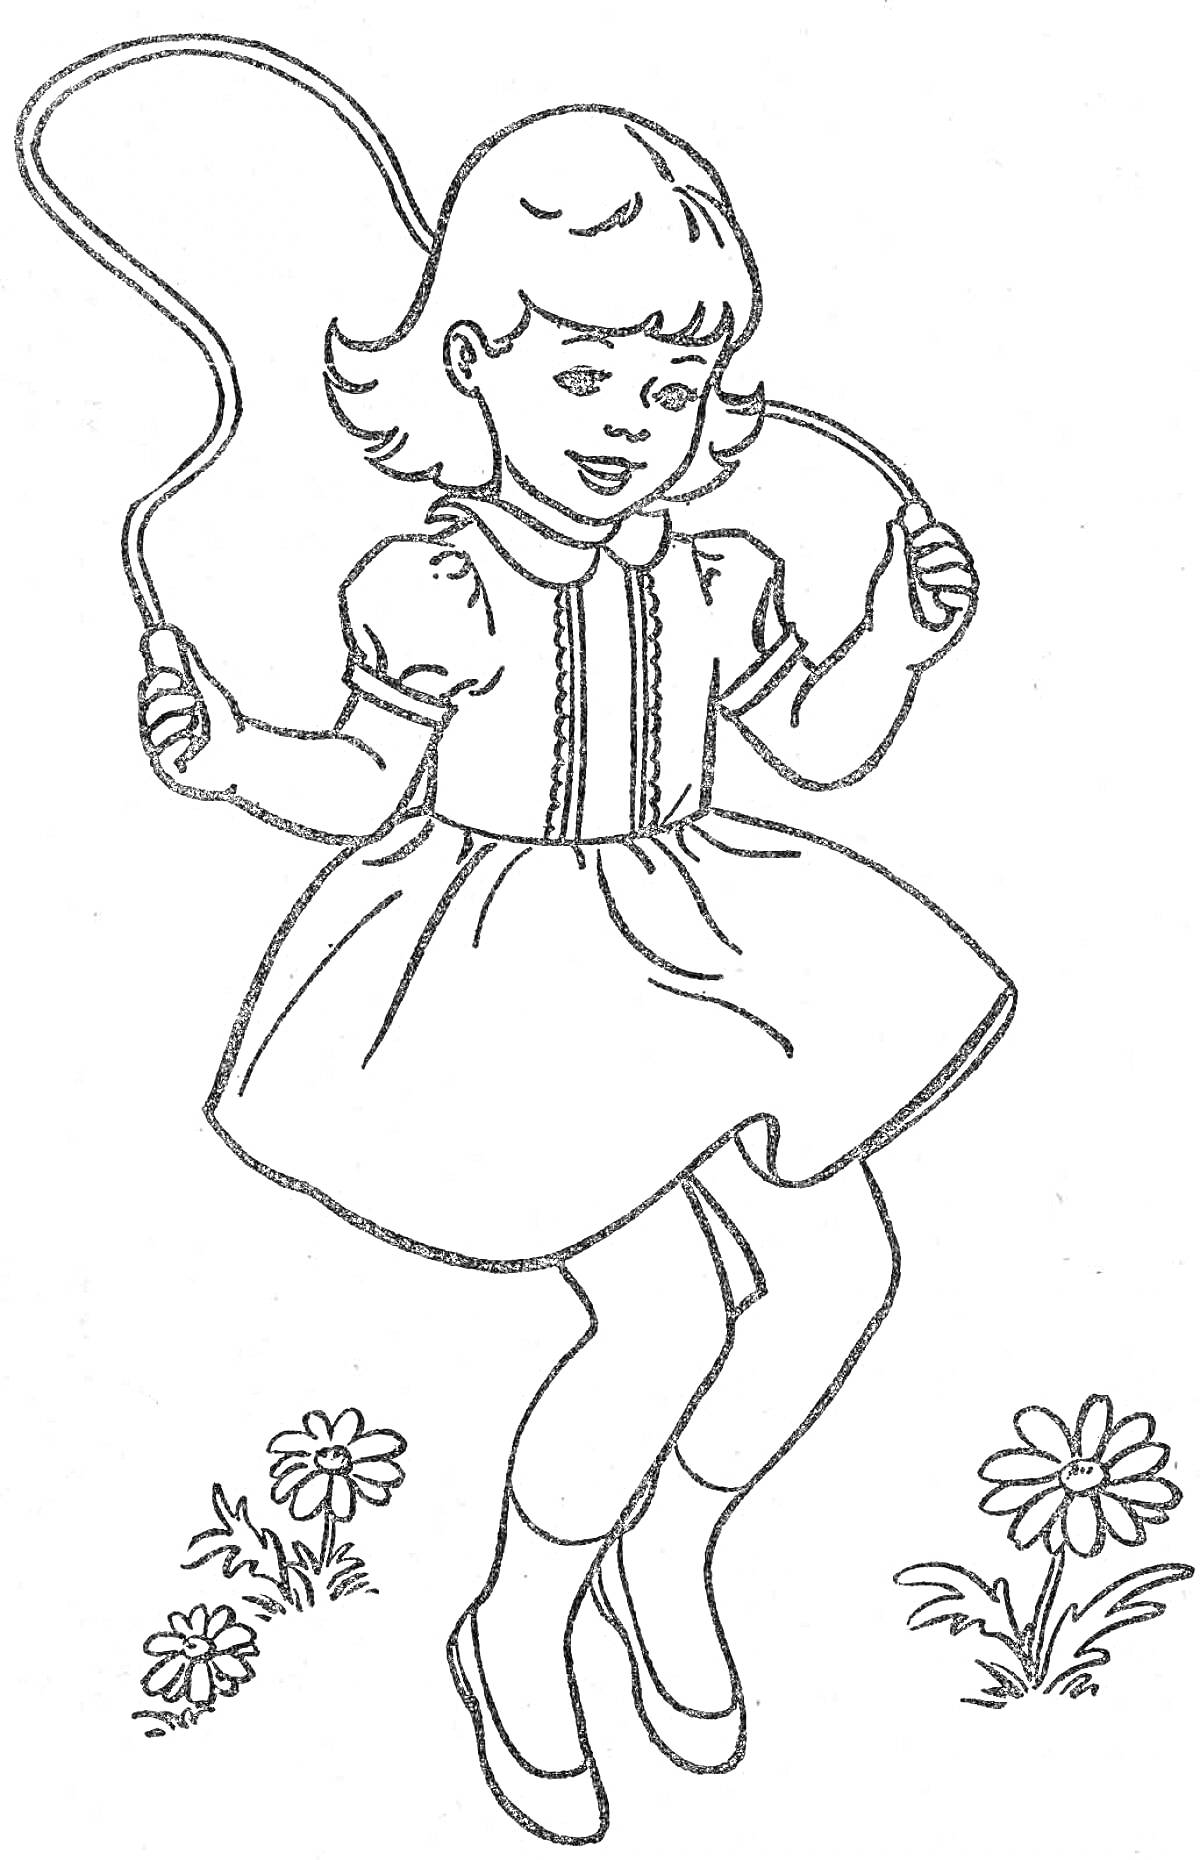 Девочка с короткими волосами в платье с короткими рукавами и в туфлях прыгает на скакалке, цветы на траве